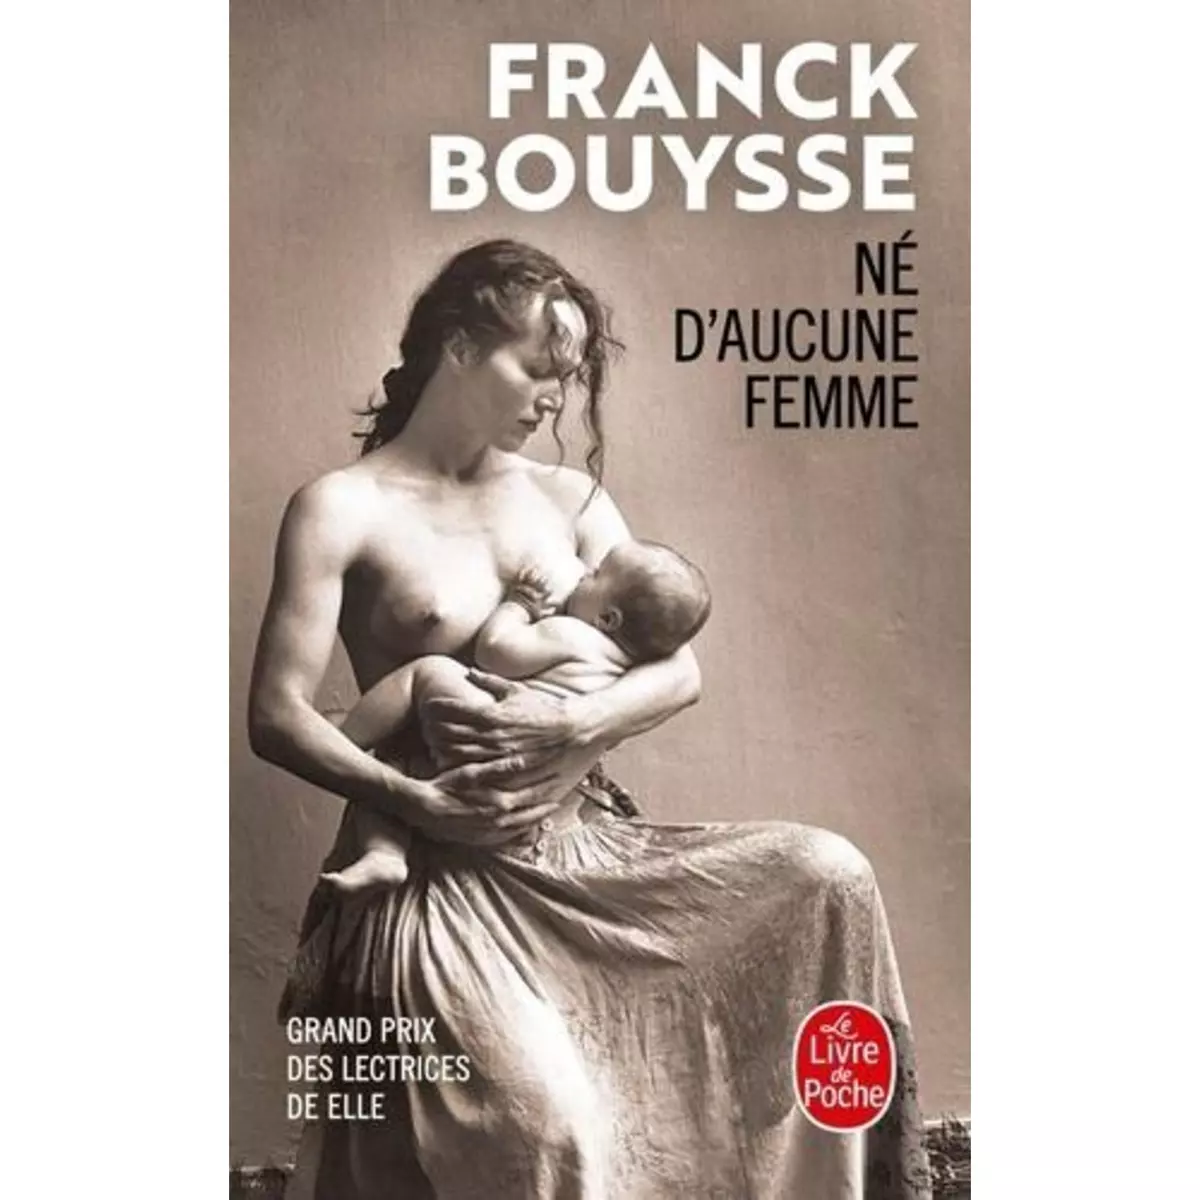  NE D'AUCUNE FEMME, Bouysse Franck